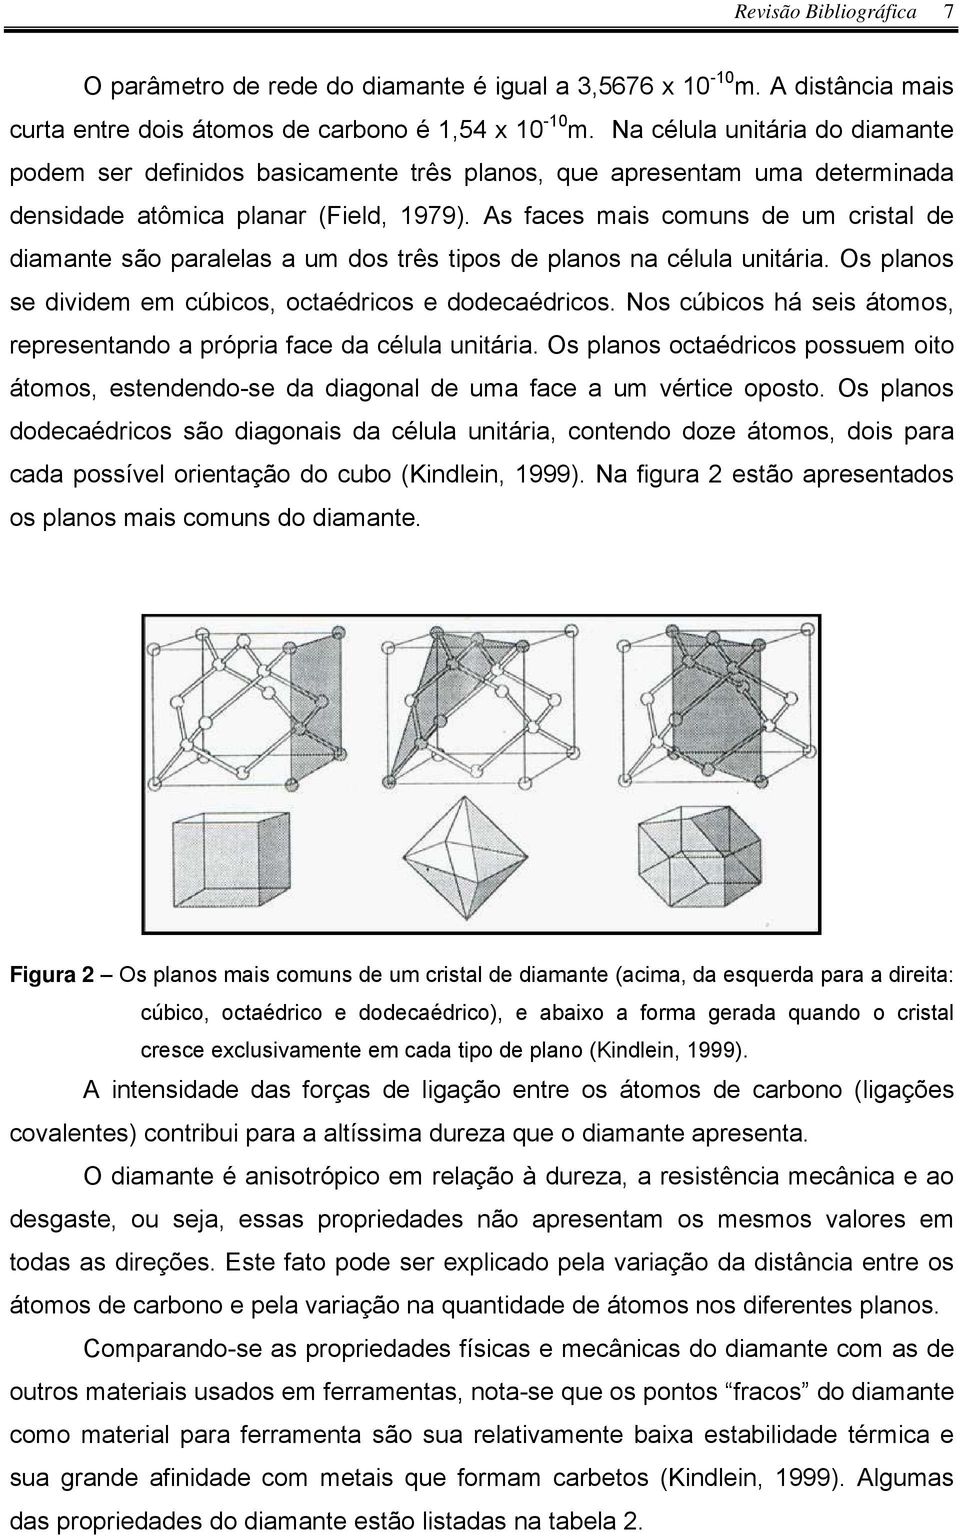 As faces mais comuns de um cristal de diamante são paralelas a um dos três tipos de planos na célula unitária. Os planos se dividem em cúbicos, octaédricos e dodecaédricos.